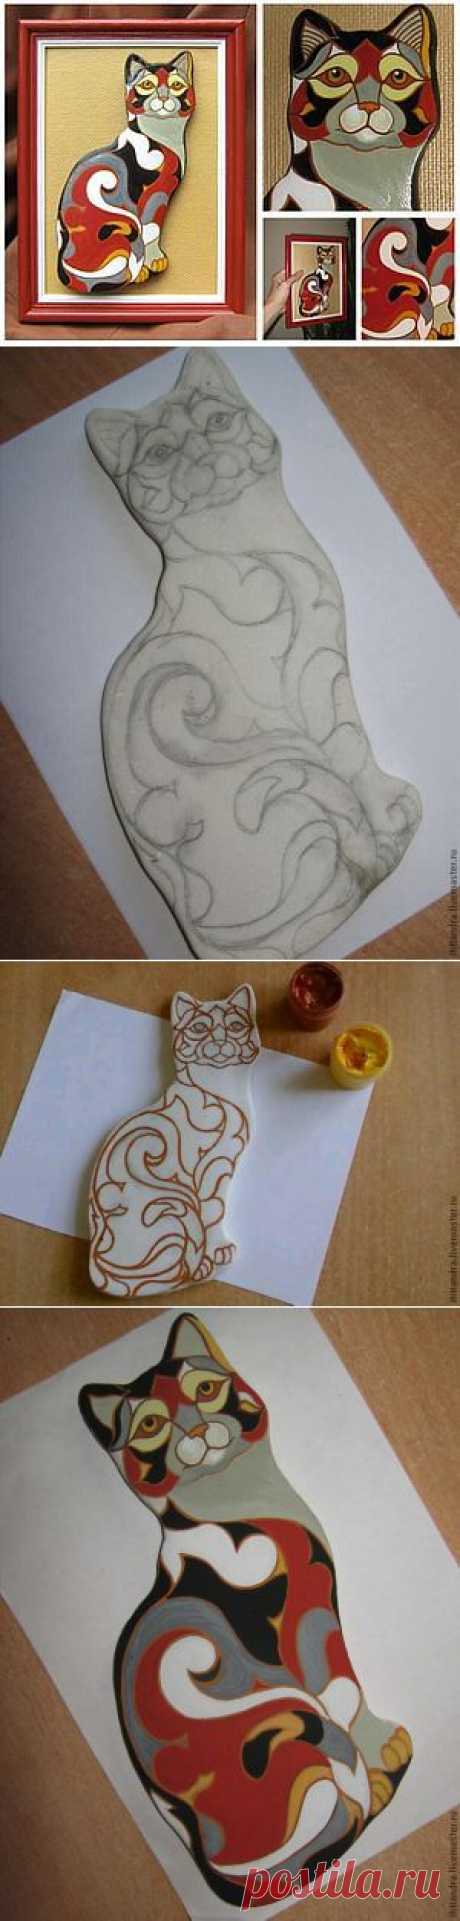 Мастер-класс: кошка из солёного теста в стиле De Rosa/Rinconada - Ярмарка Мастеров - ручная работа, handmade